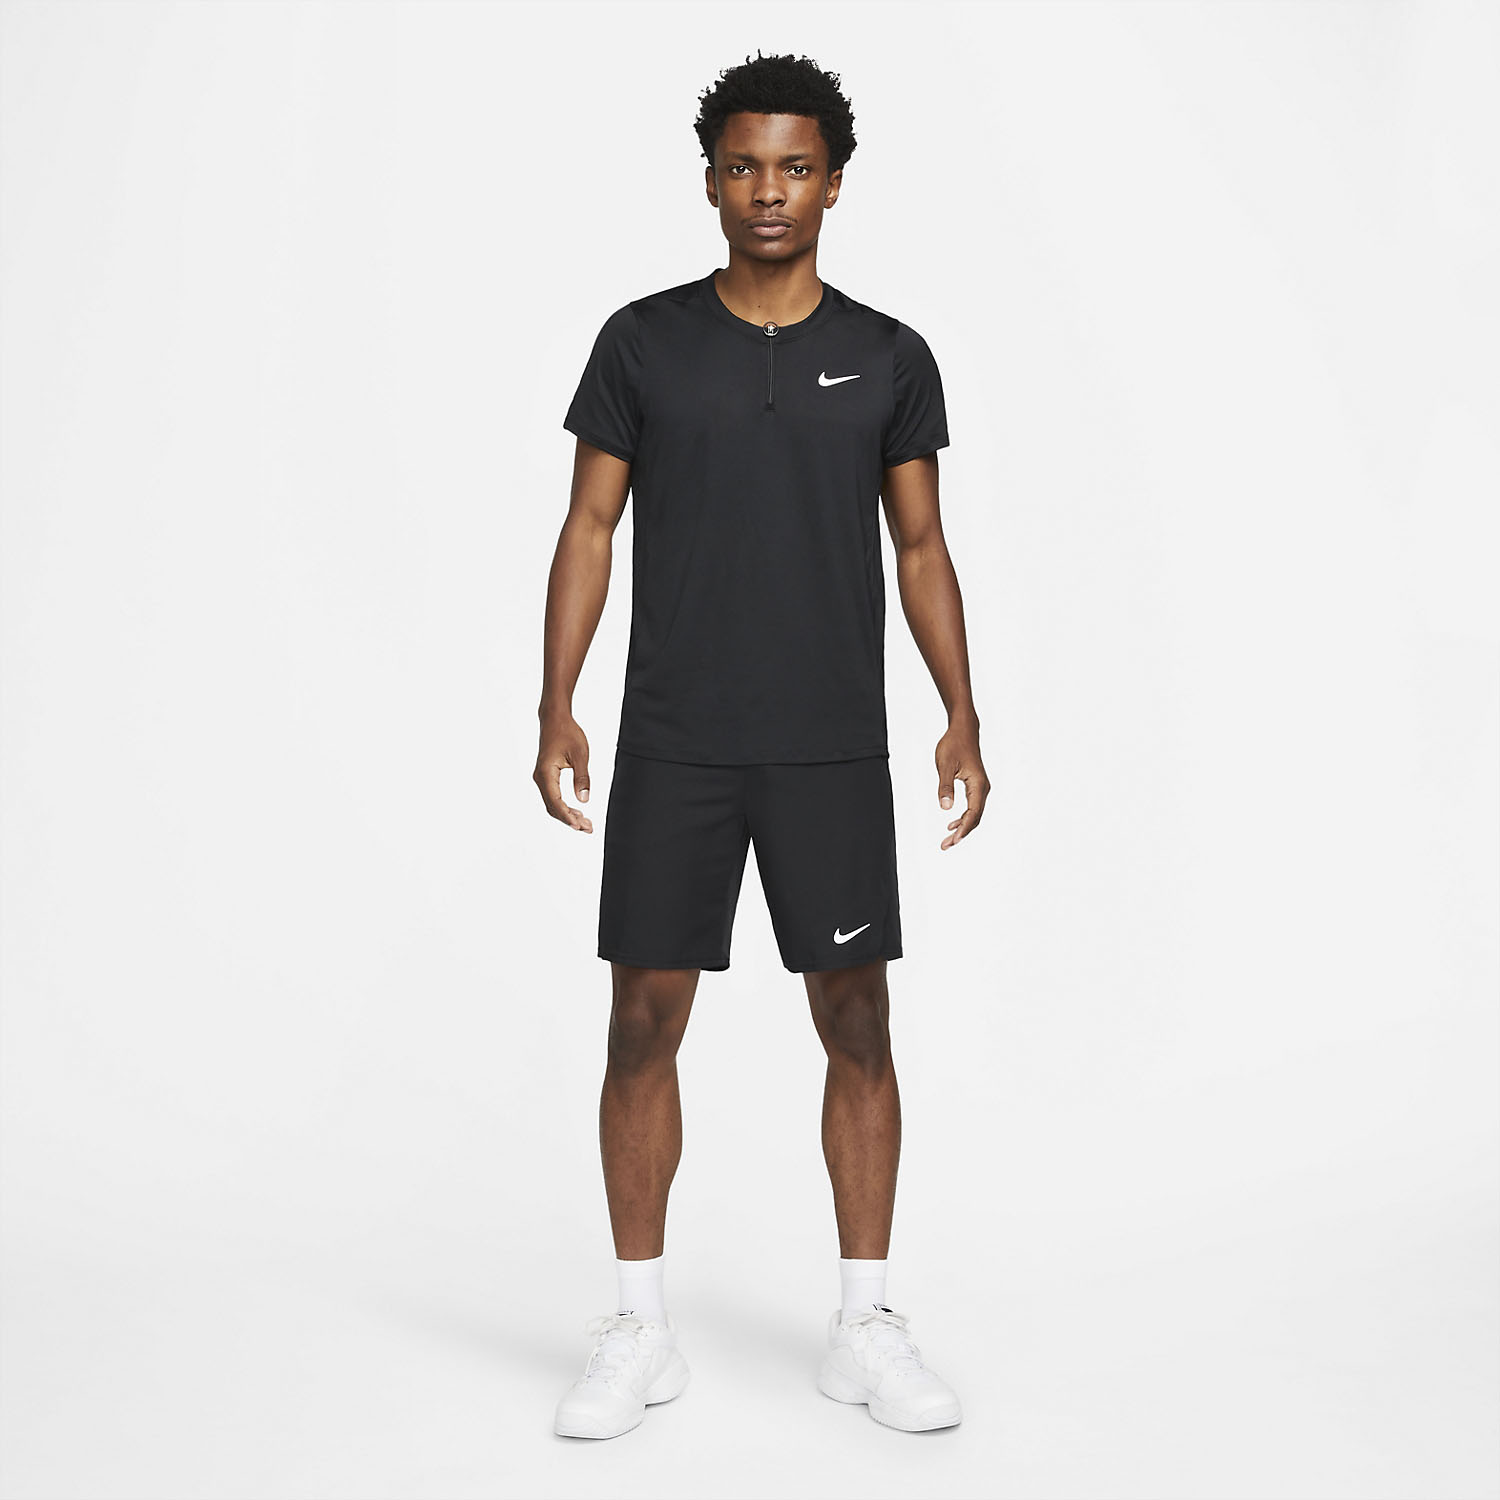 Nike Dri-FIT Advantage Polo - Black/White